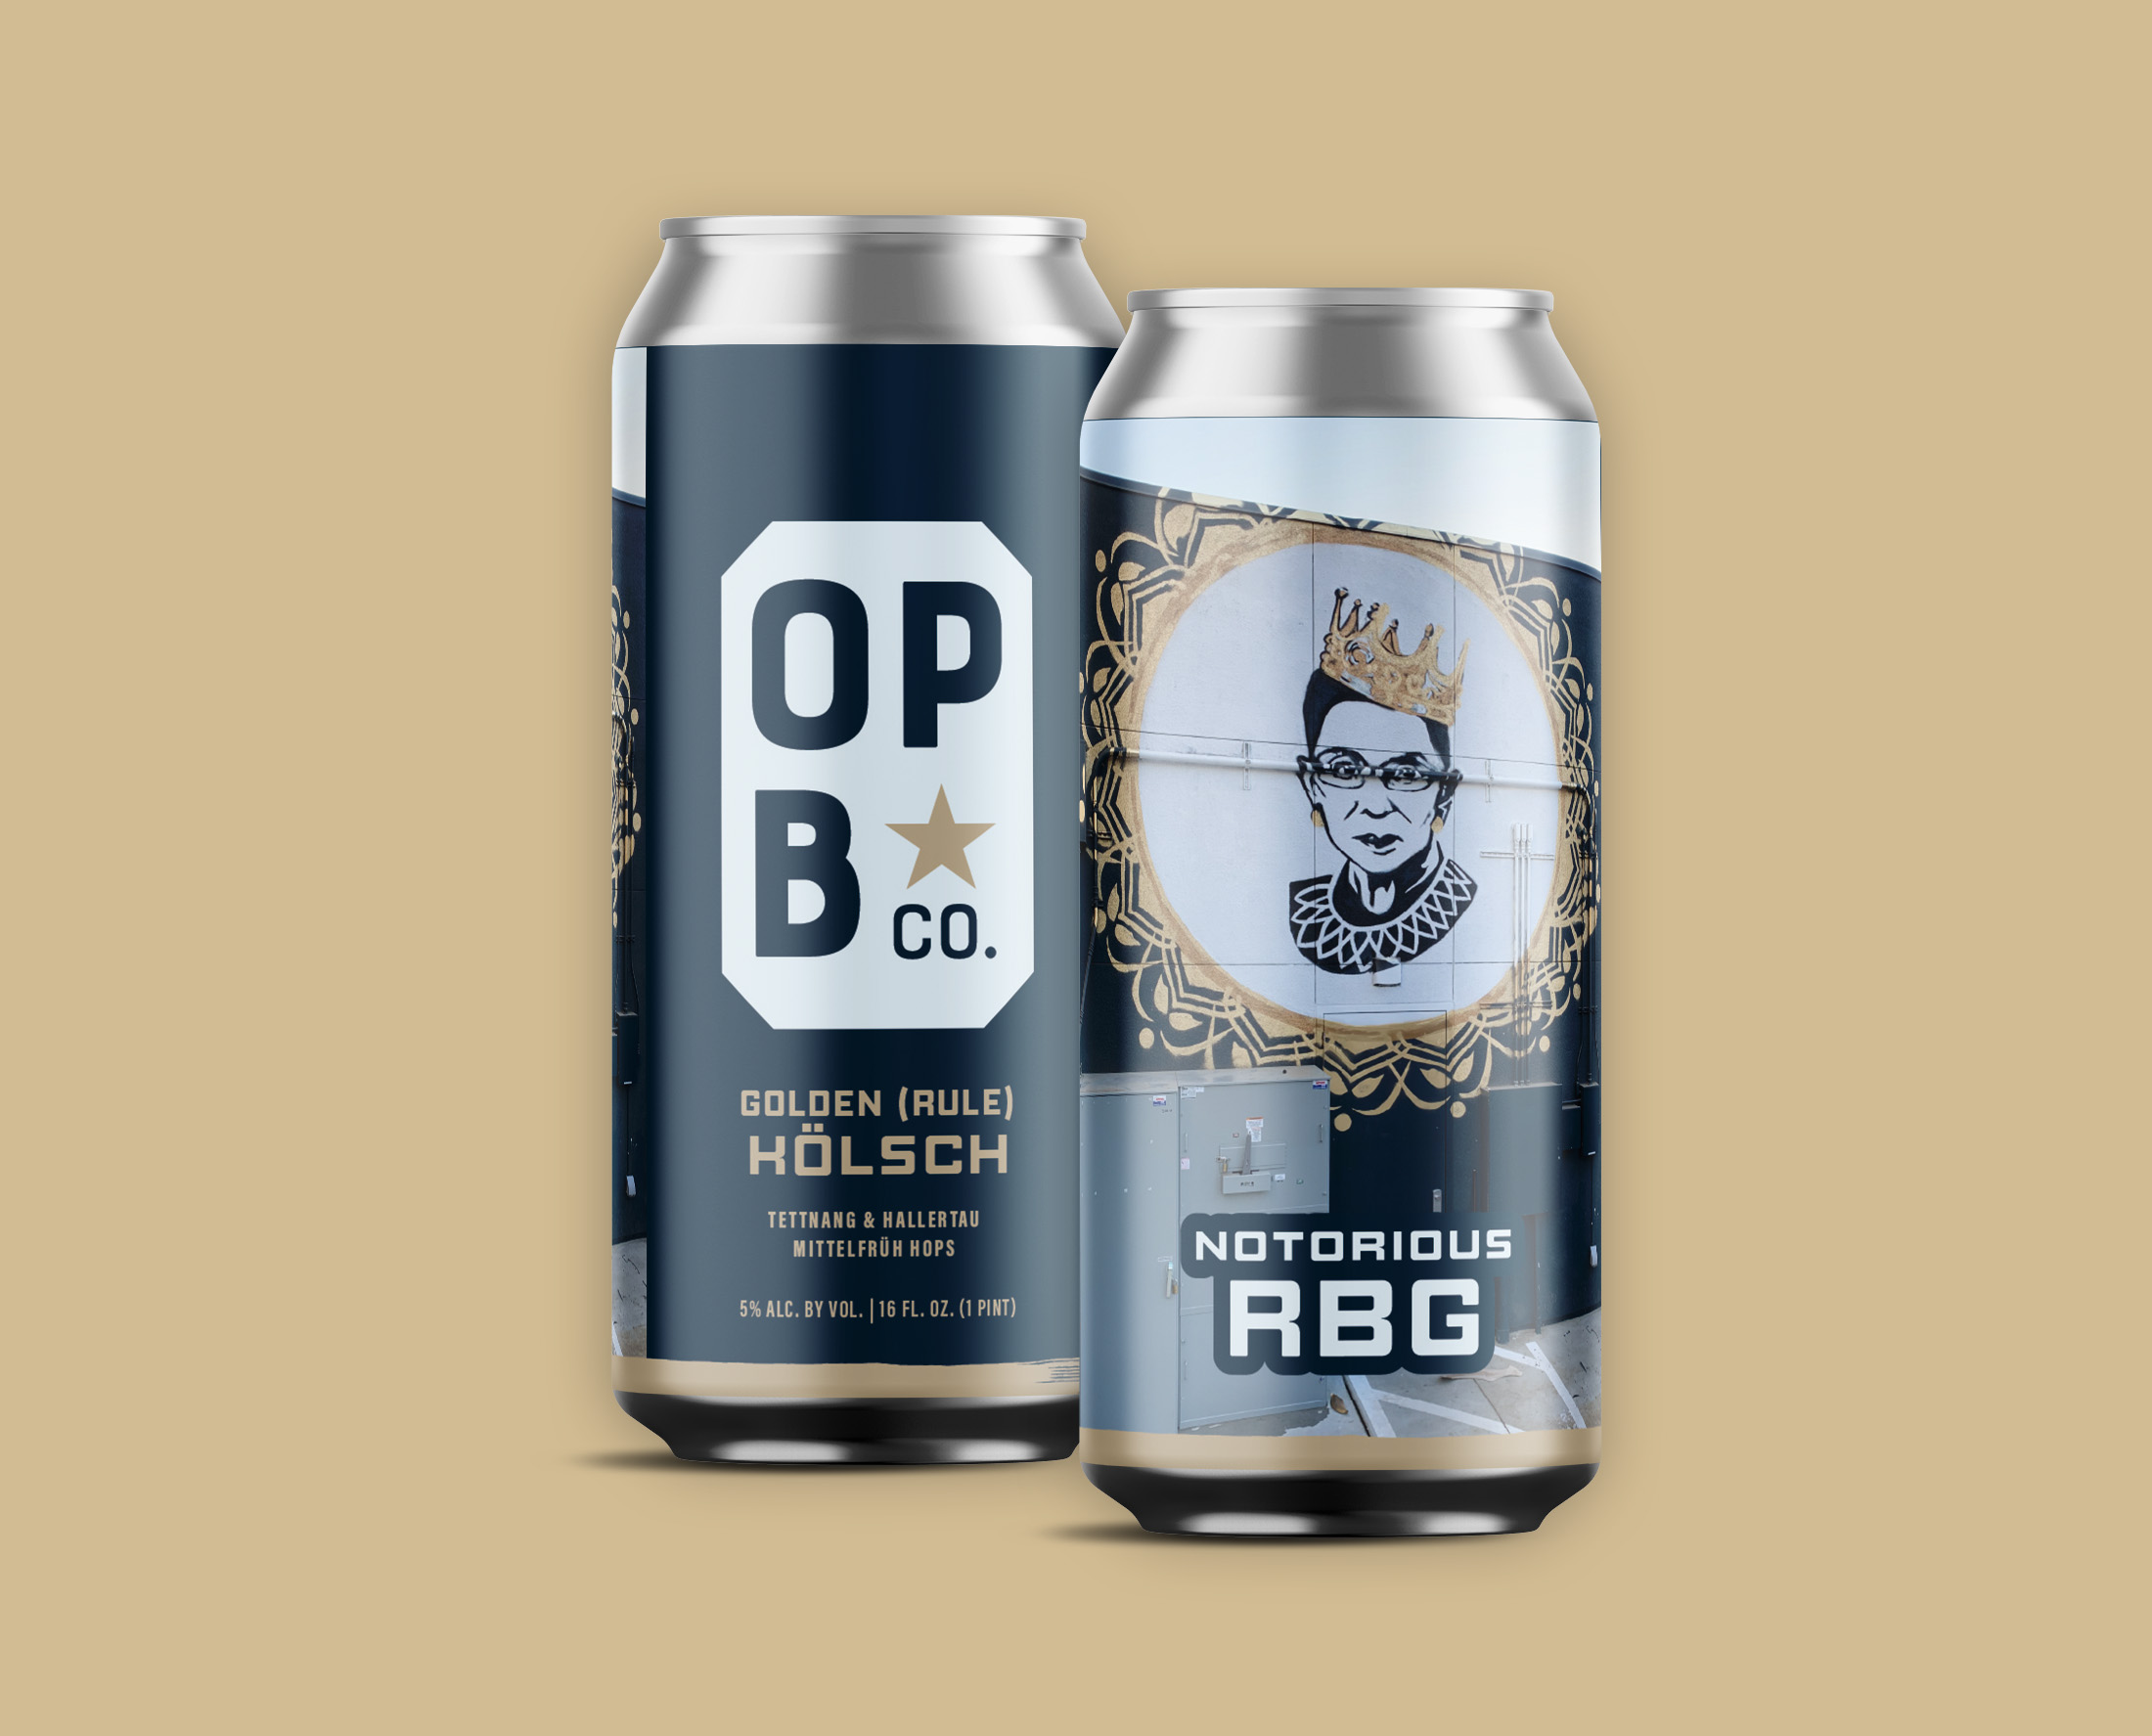 Digital rendering of Notorious RBG golden (rule) Kolsch beer. 2 cans